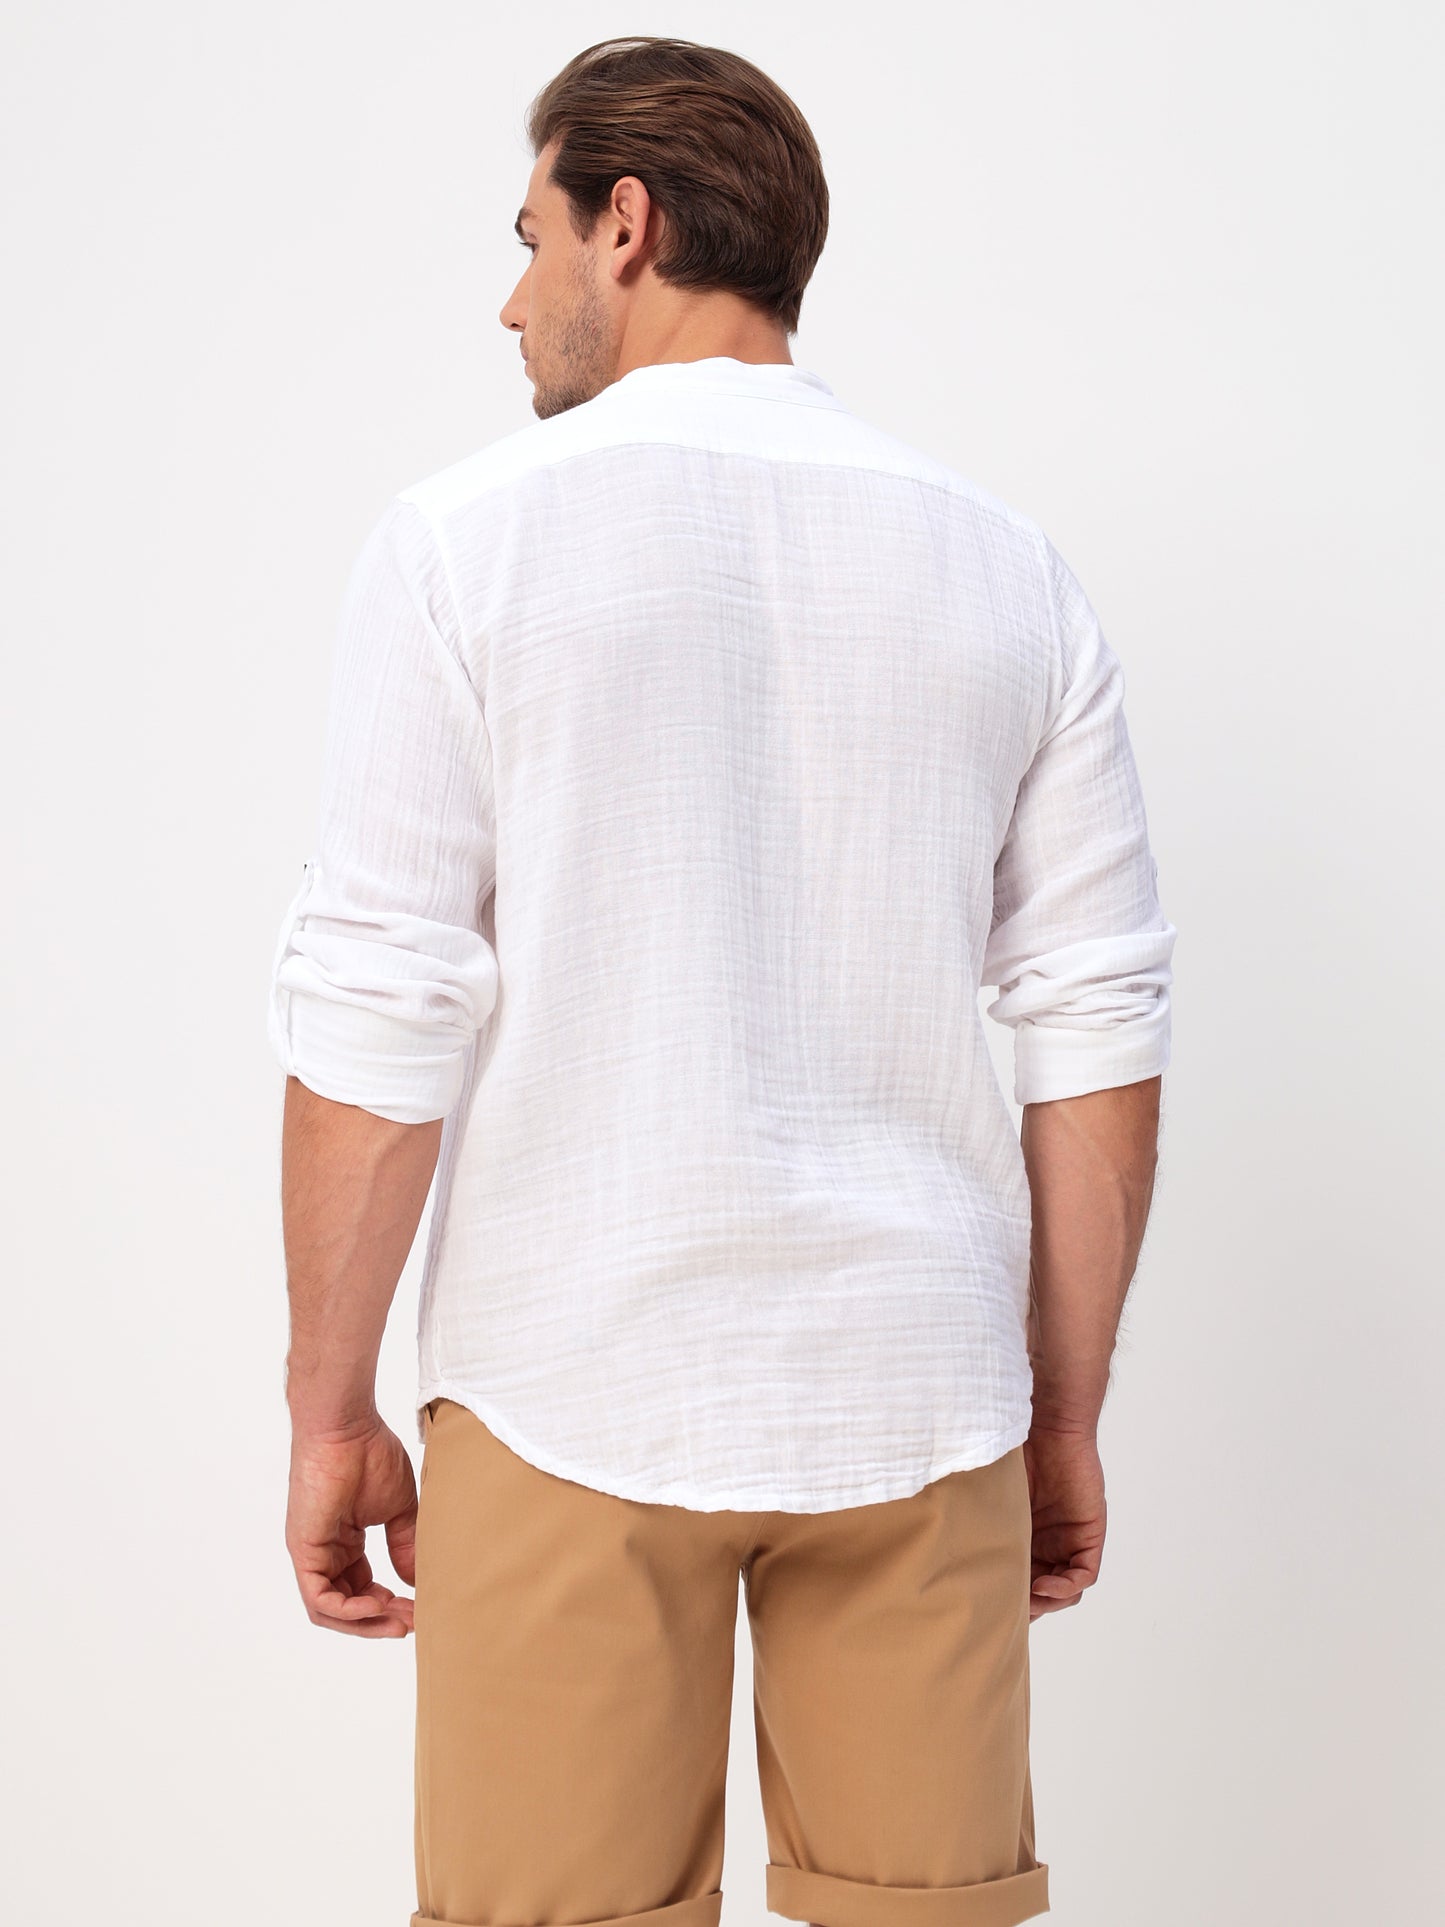 Herren Sommer Mode Hemd aus lässige Musselin Freizeit LMS-6467 White Weiß